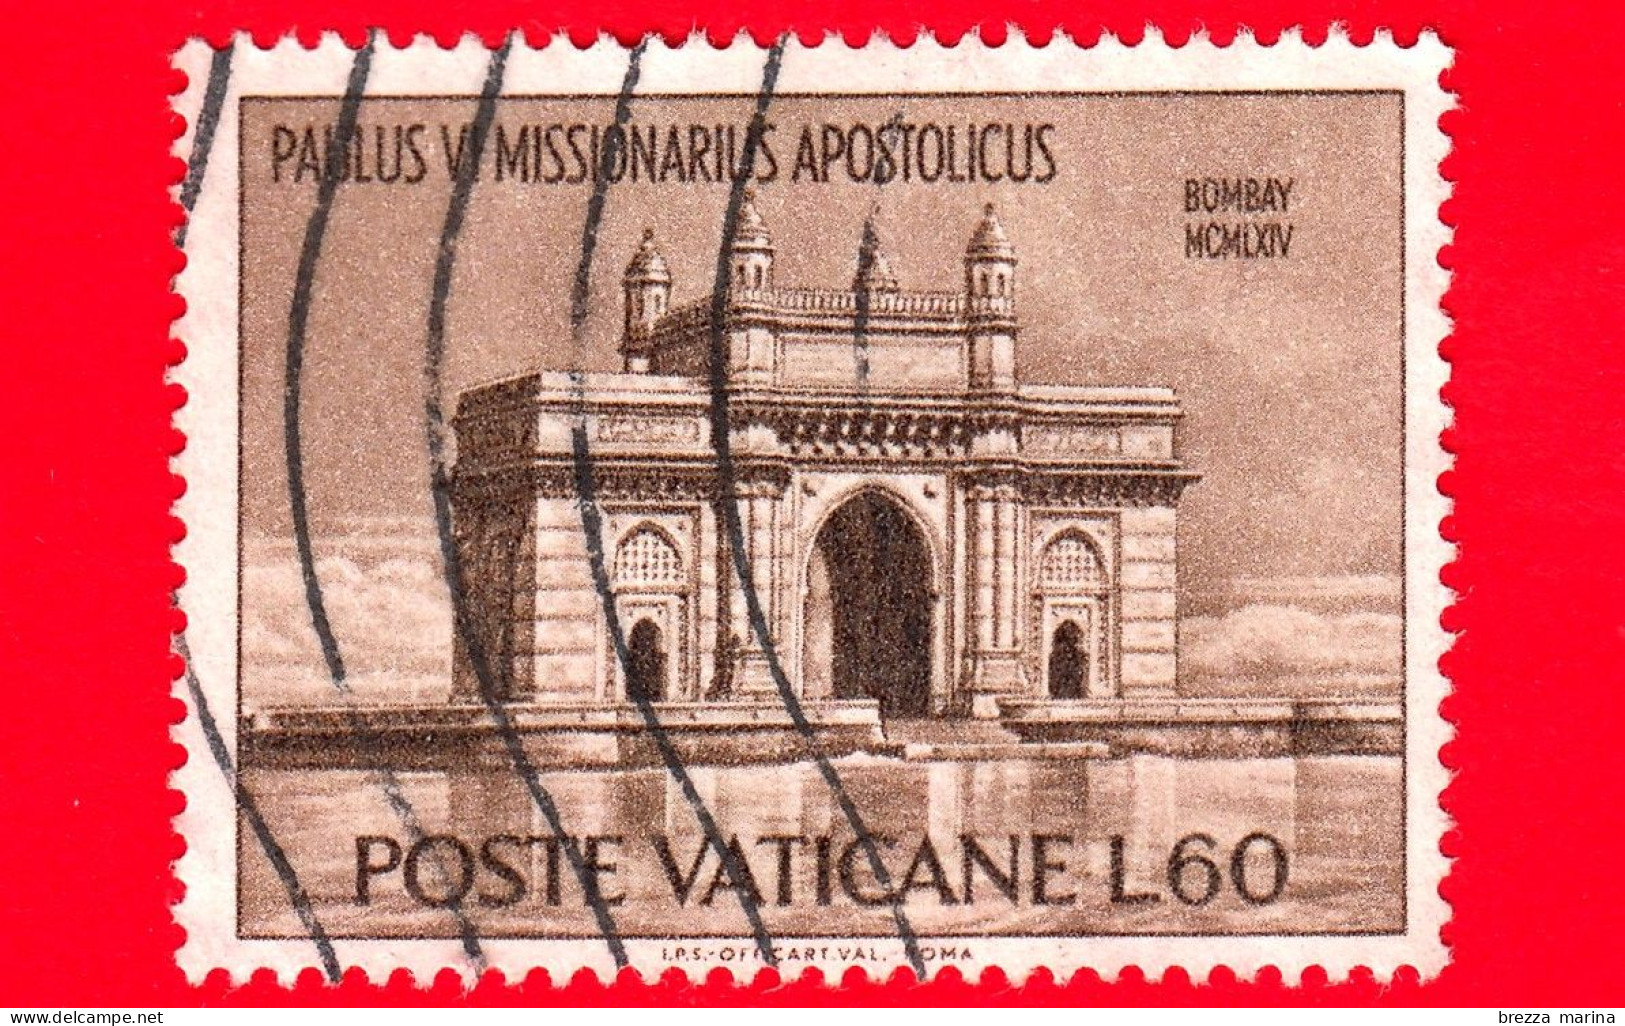 VATICANO  - Usato - 1964 - Viaggi Di Paolo VI In India - Porta Dell'India - Bombay - 60 - Used Stamps